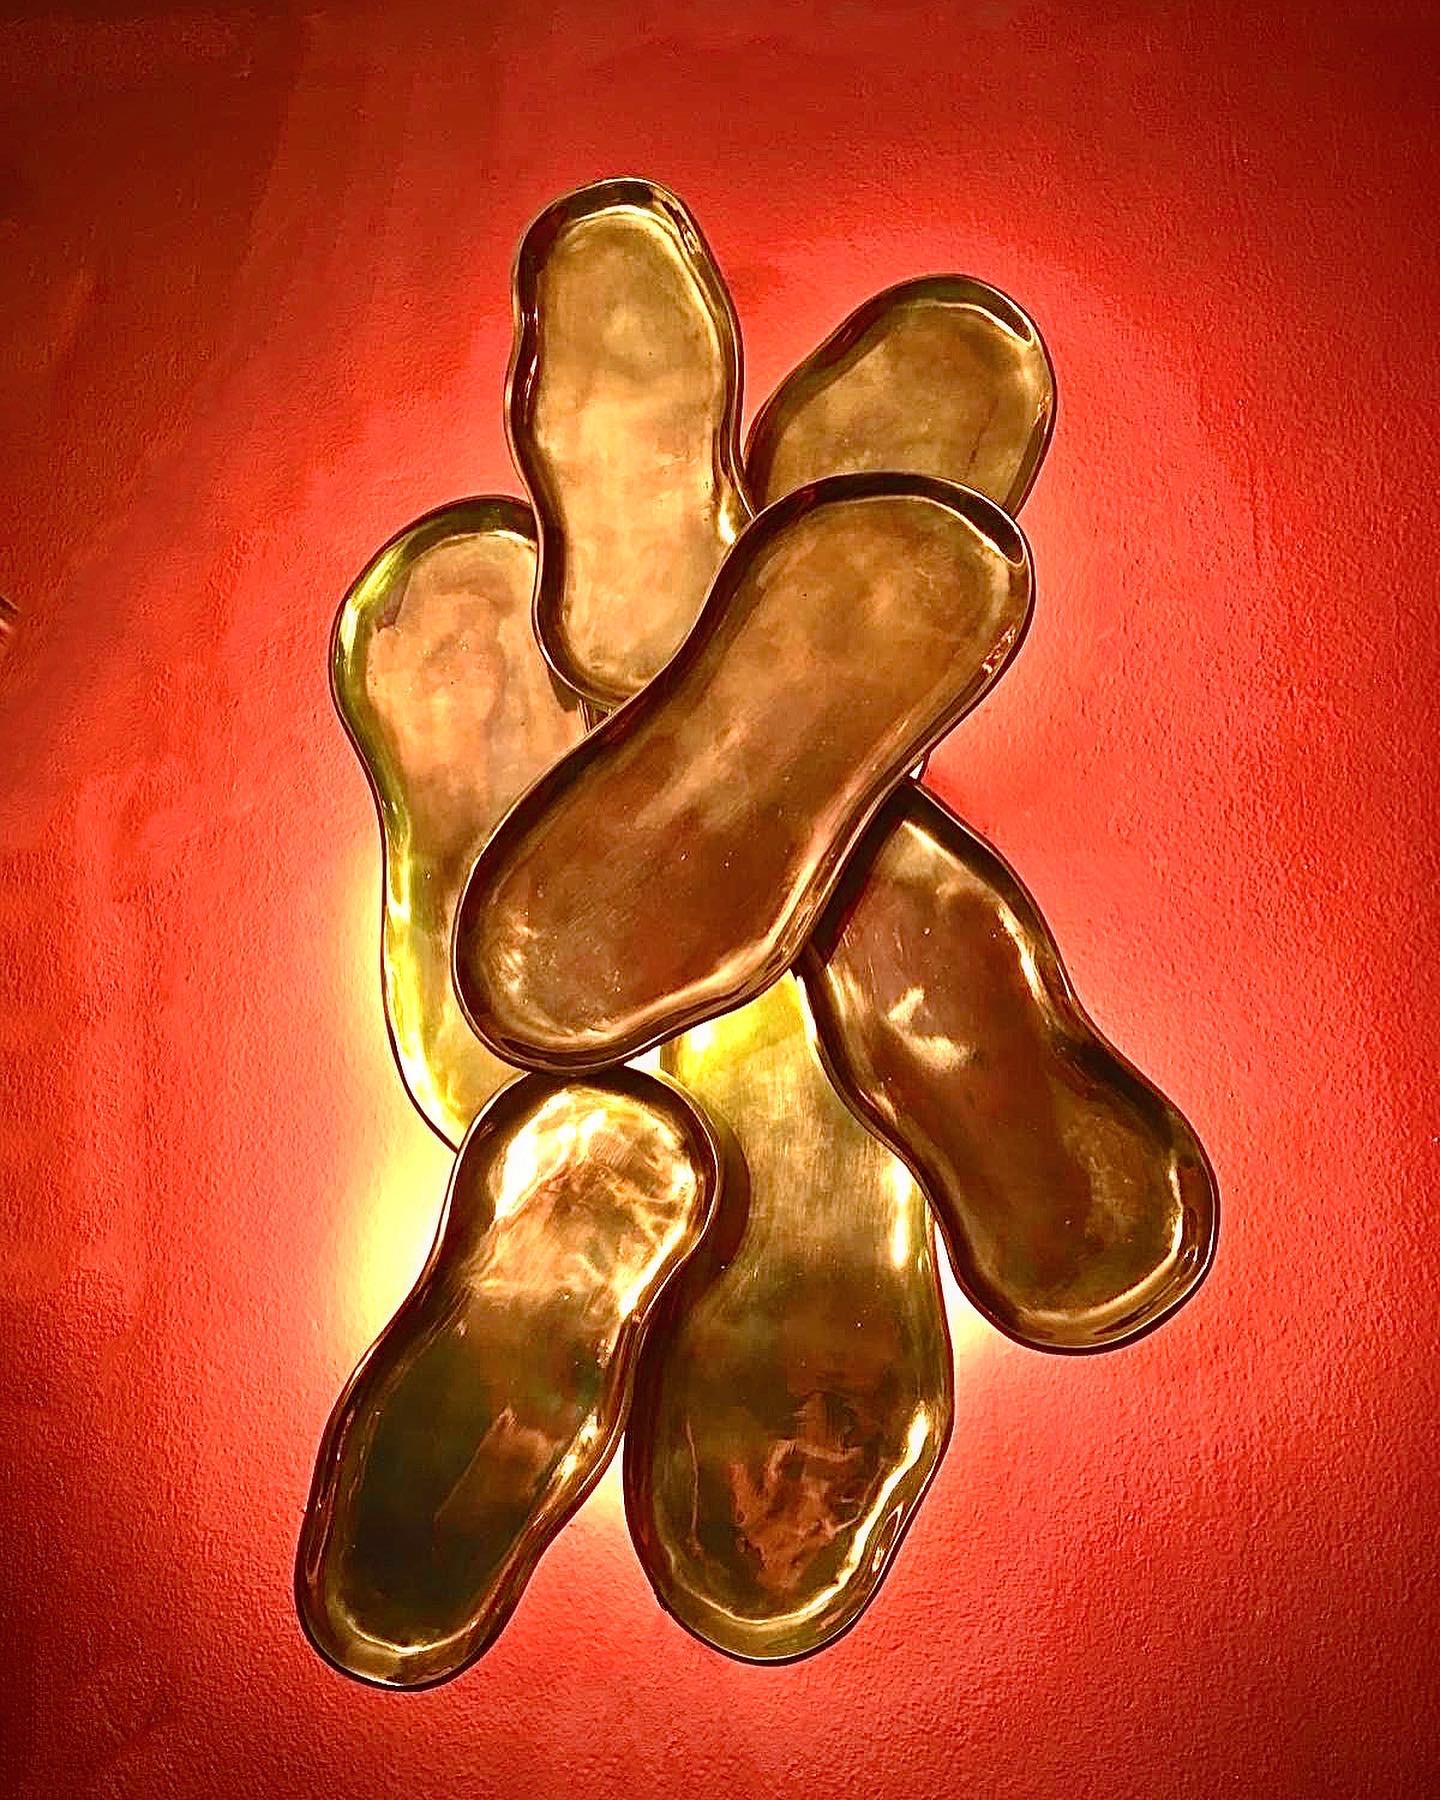 Der Wandleuchter Sedayer aus Messingguss ist eine einzigartige und stilvolle Leuchte, die in Form einer Erdnussschale gestaltet ist. Er ist aus hochwertigem Messingguss gefertigt, der für Haltbarkeit und Langlebigkeit sorgt. Die Leuchte besteht aus